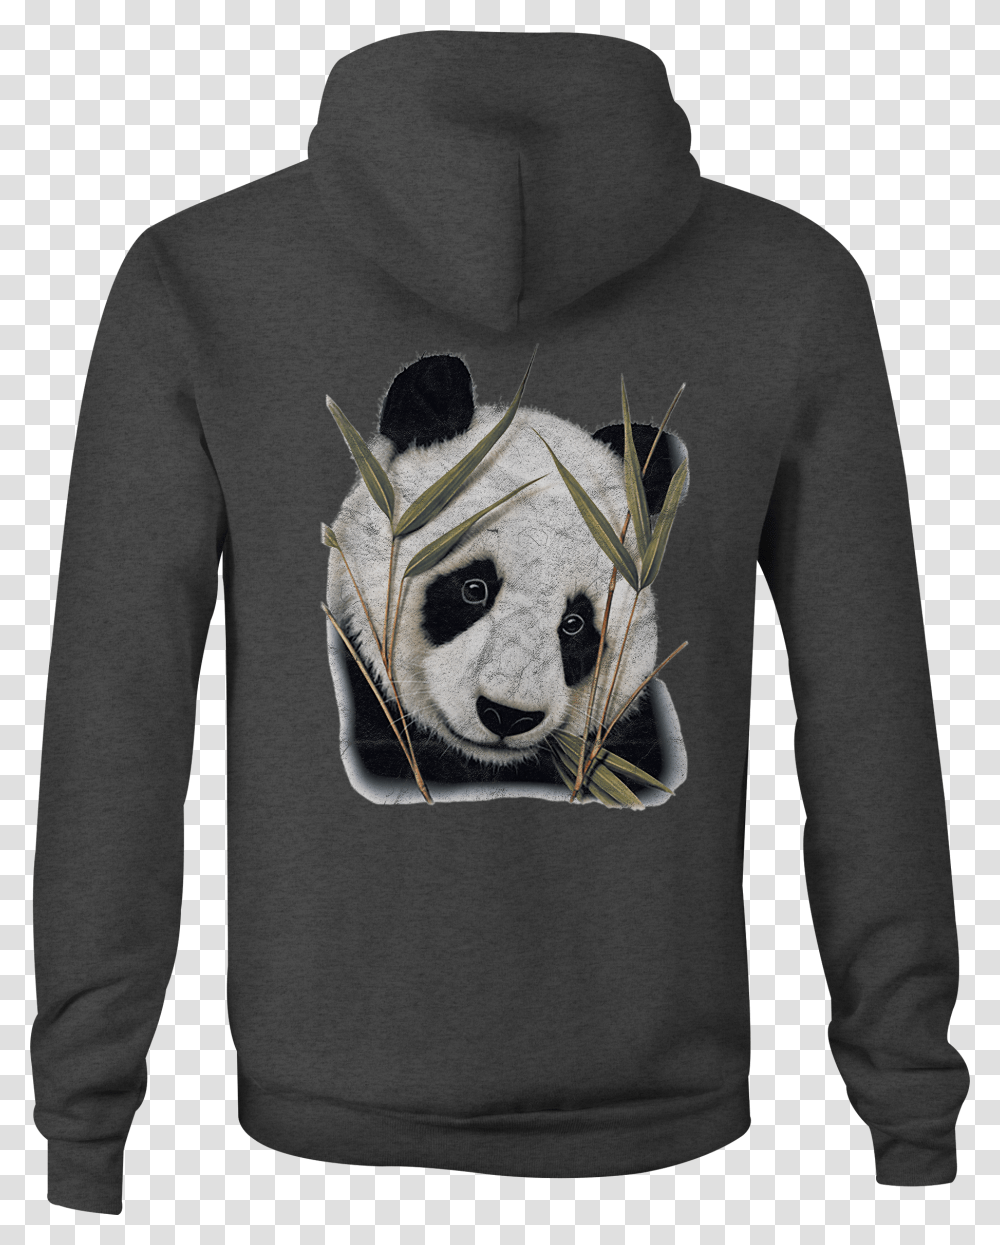 Zip Up Hoodie Panda Bear Bamboo Hooded Sweatshirt Hoodie, Apparel, Sleeve, Sweater Transparent Png